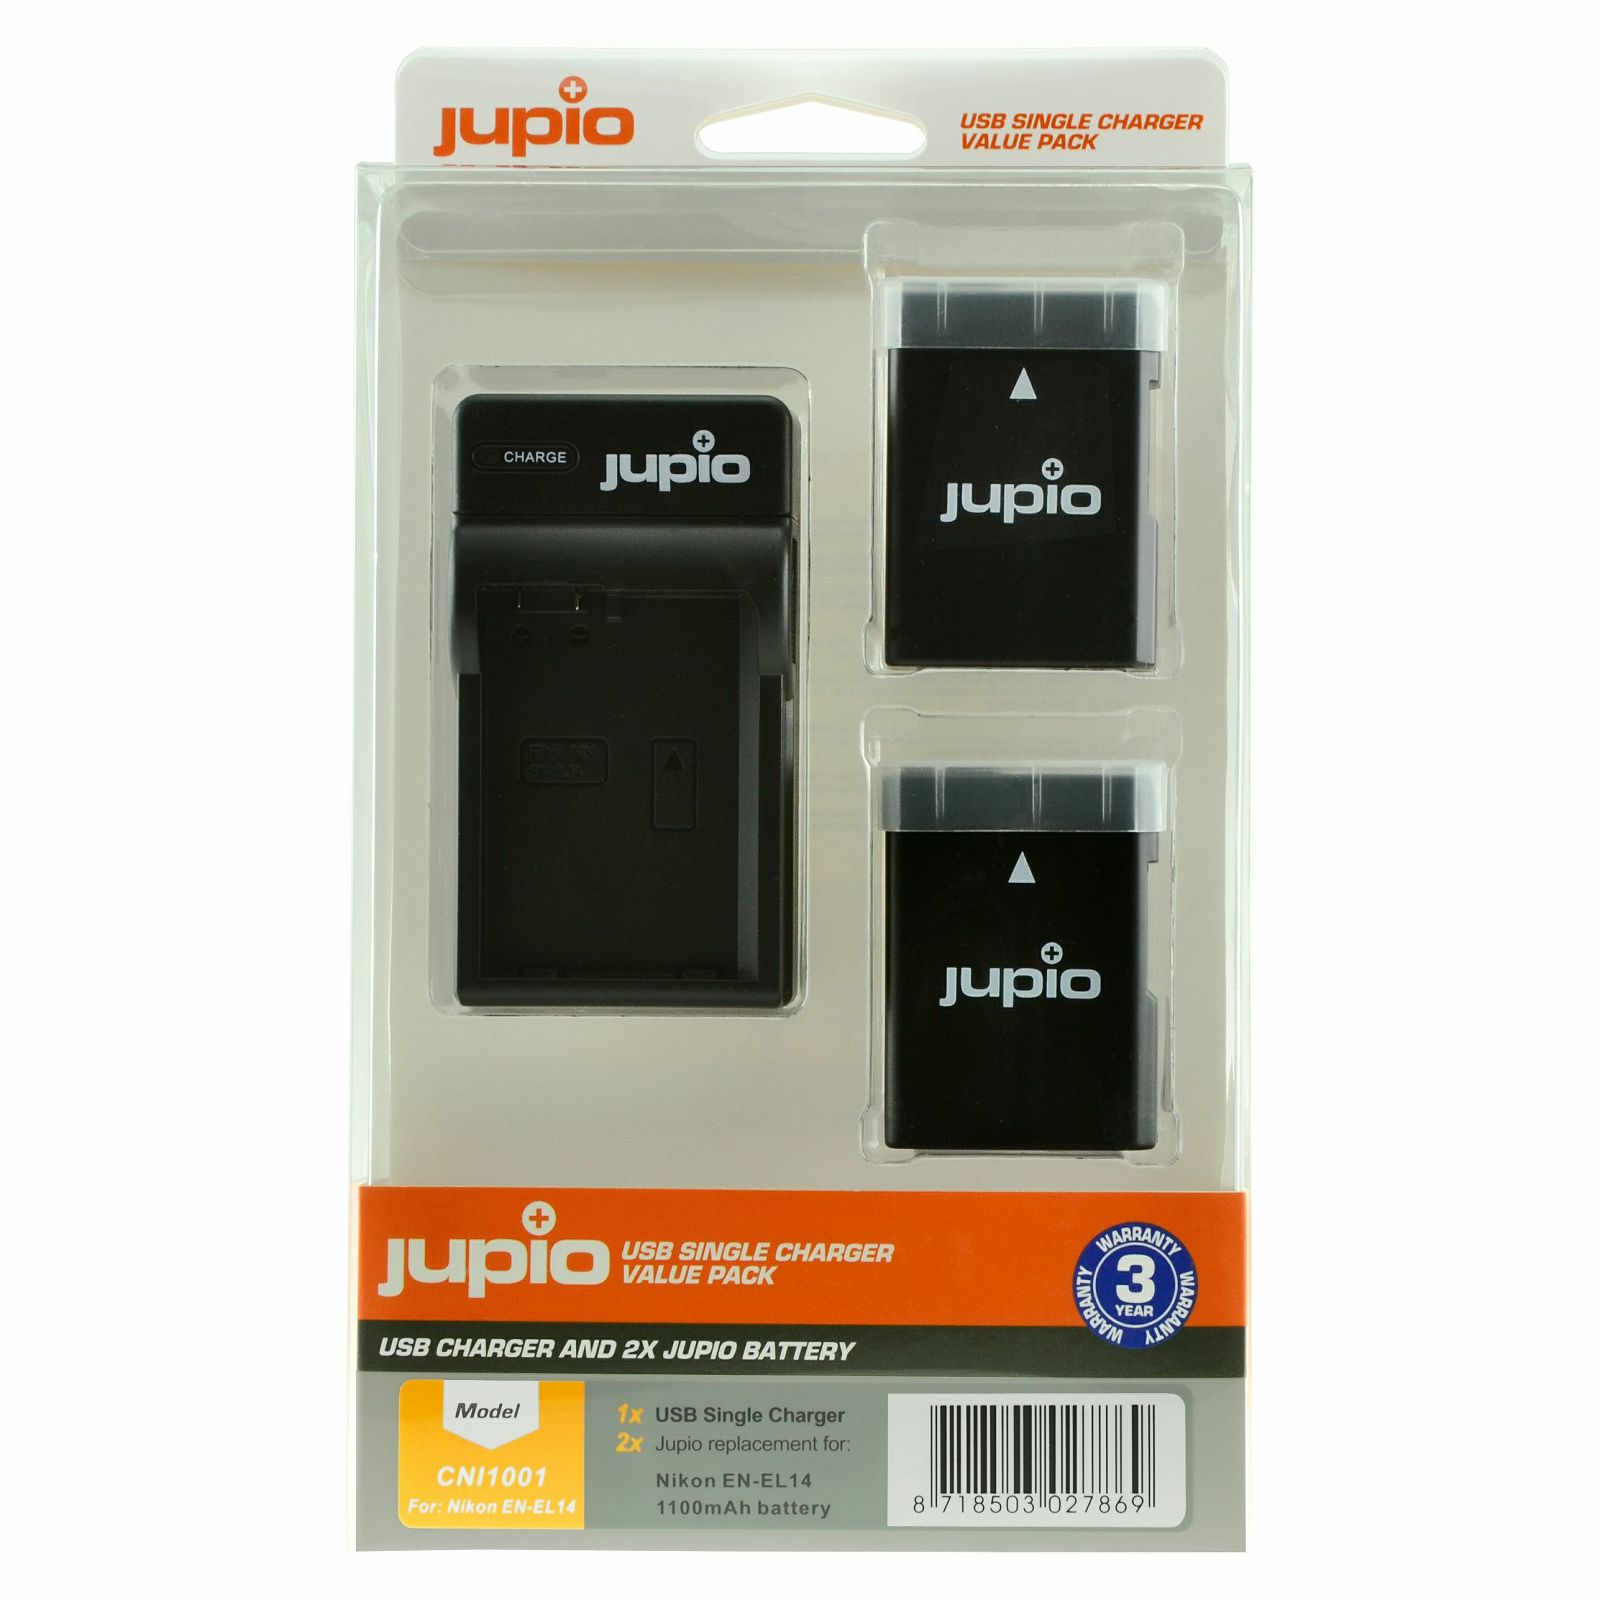 Jupio KIT 2x Battery EN-EL14 EN-EL14A 1100mAh + USB Single Charger komplet punjač i dvije baterije za Nikon D5300, D5200, D3400, D3300, D3200 Coolpix P7800 (CNI1001)